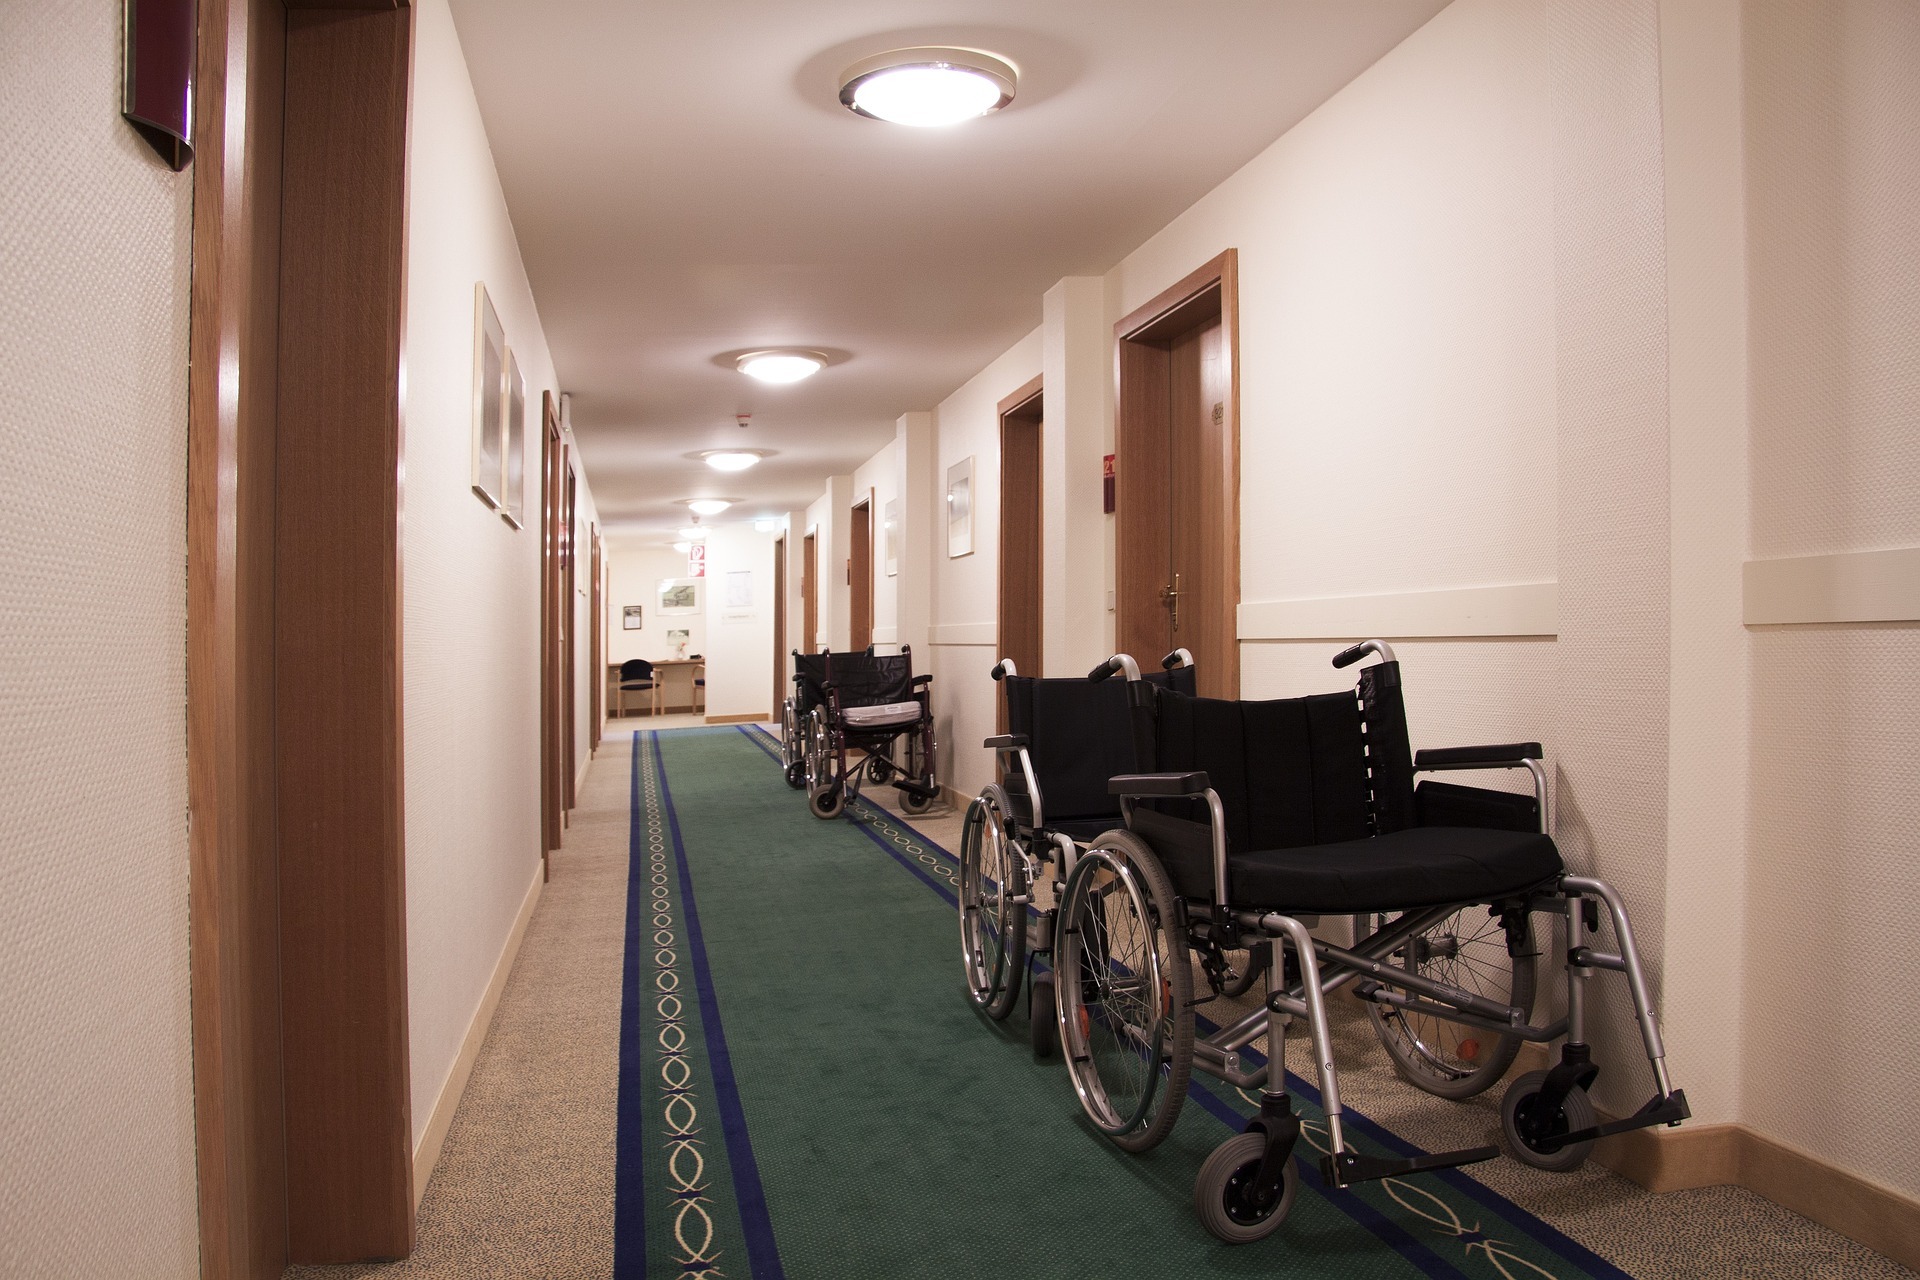 Denuncian falta de plazas y recursos en los centros de discapacidad: "Conselleria solo ofrece entrar en una lista de espera opaca"